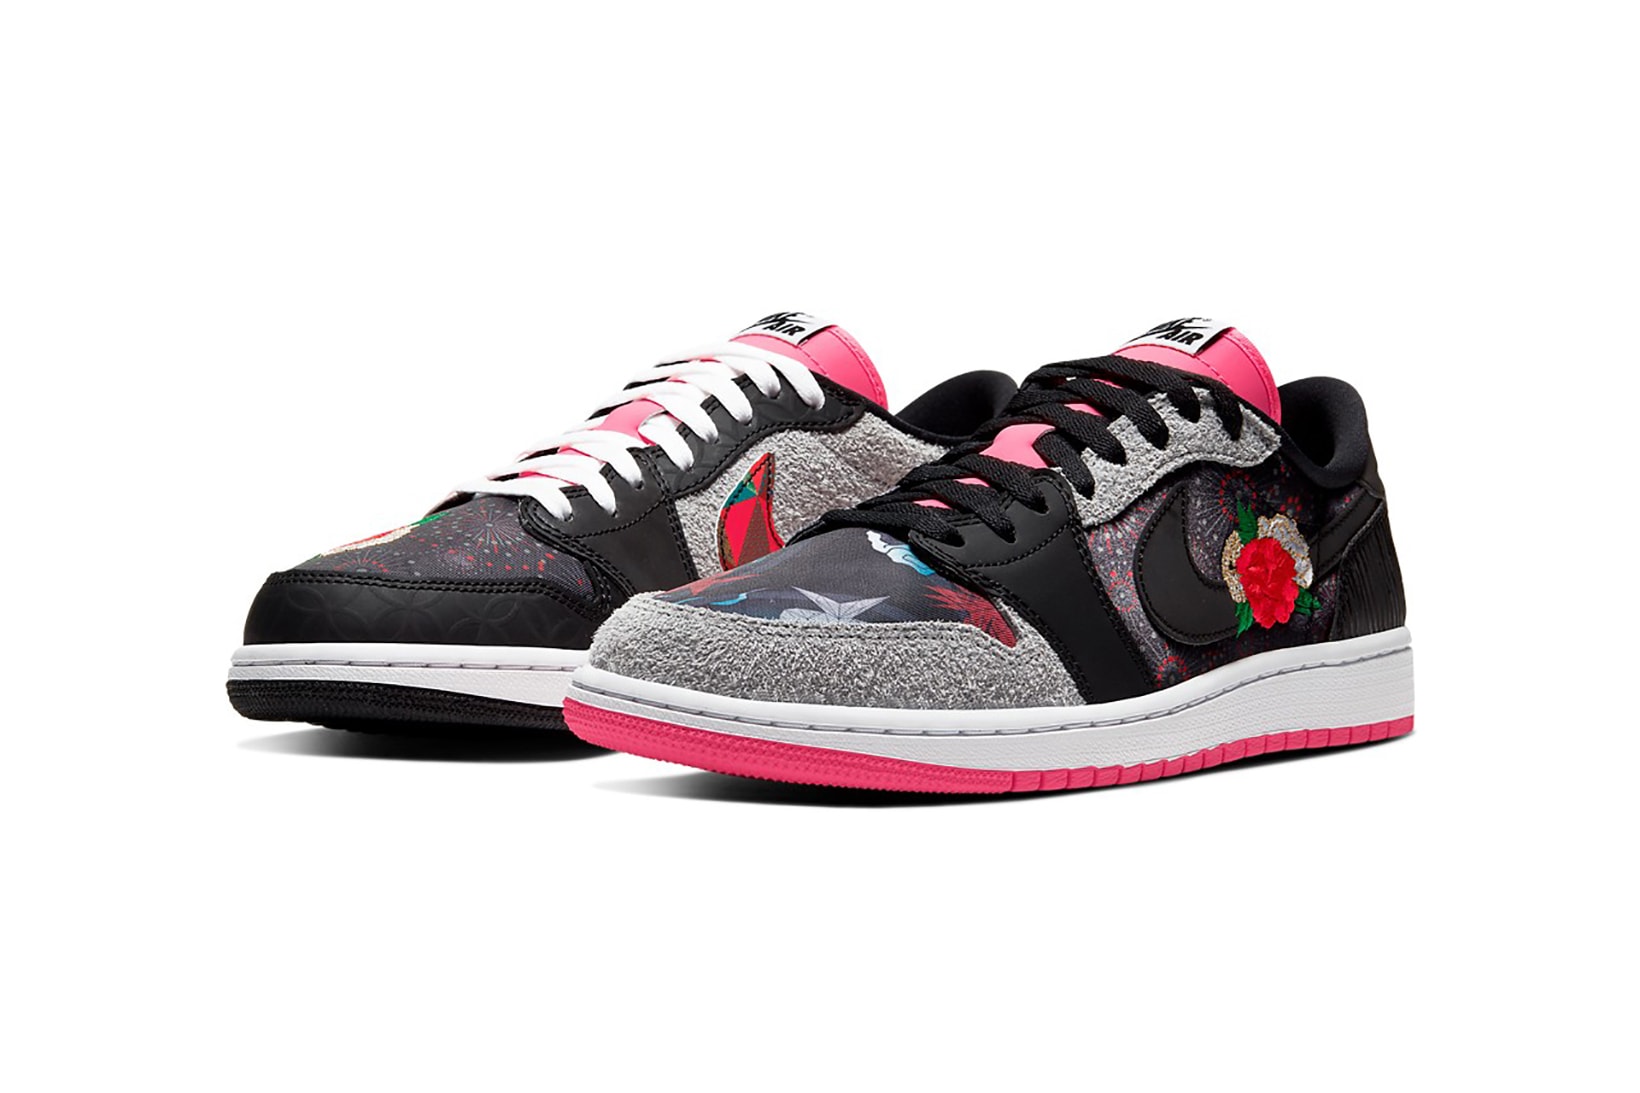 nike air jordan 1 low chinese new year sneakers pink black shoes footwear sneakerhead